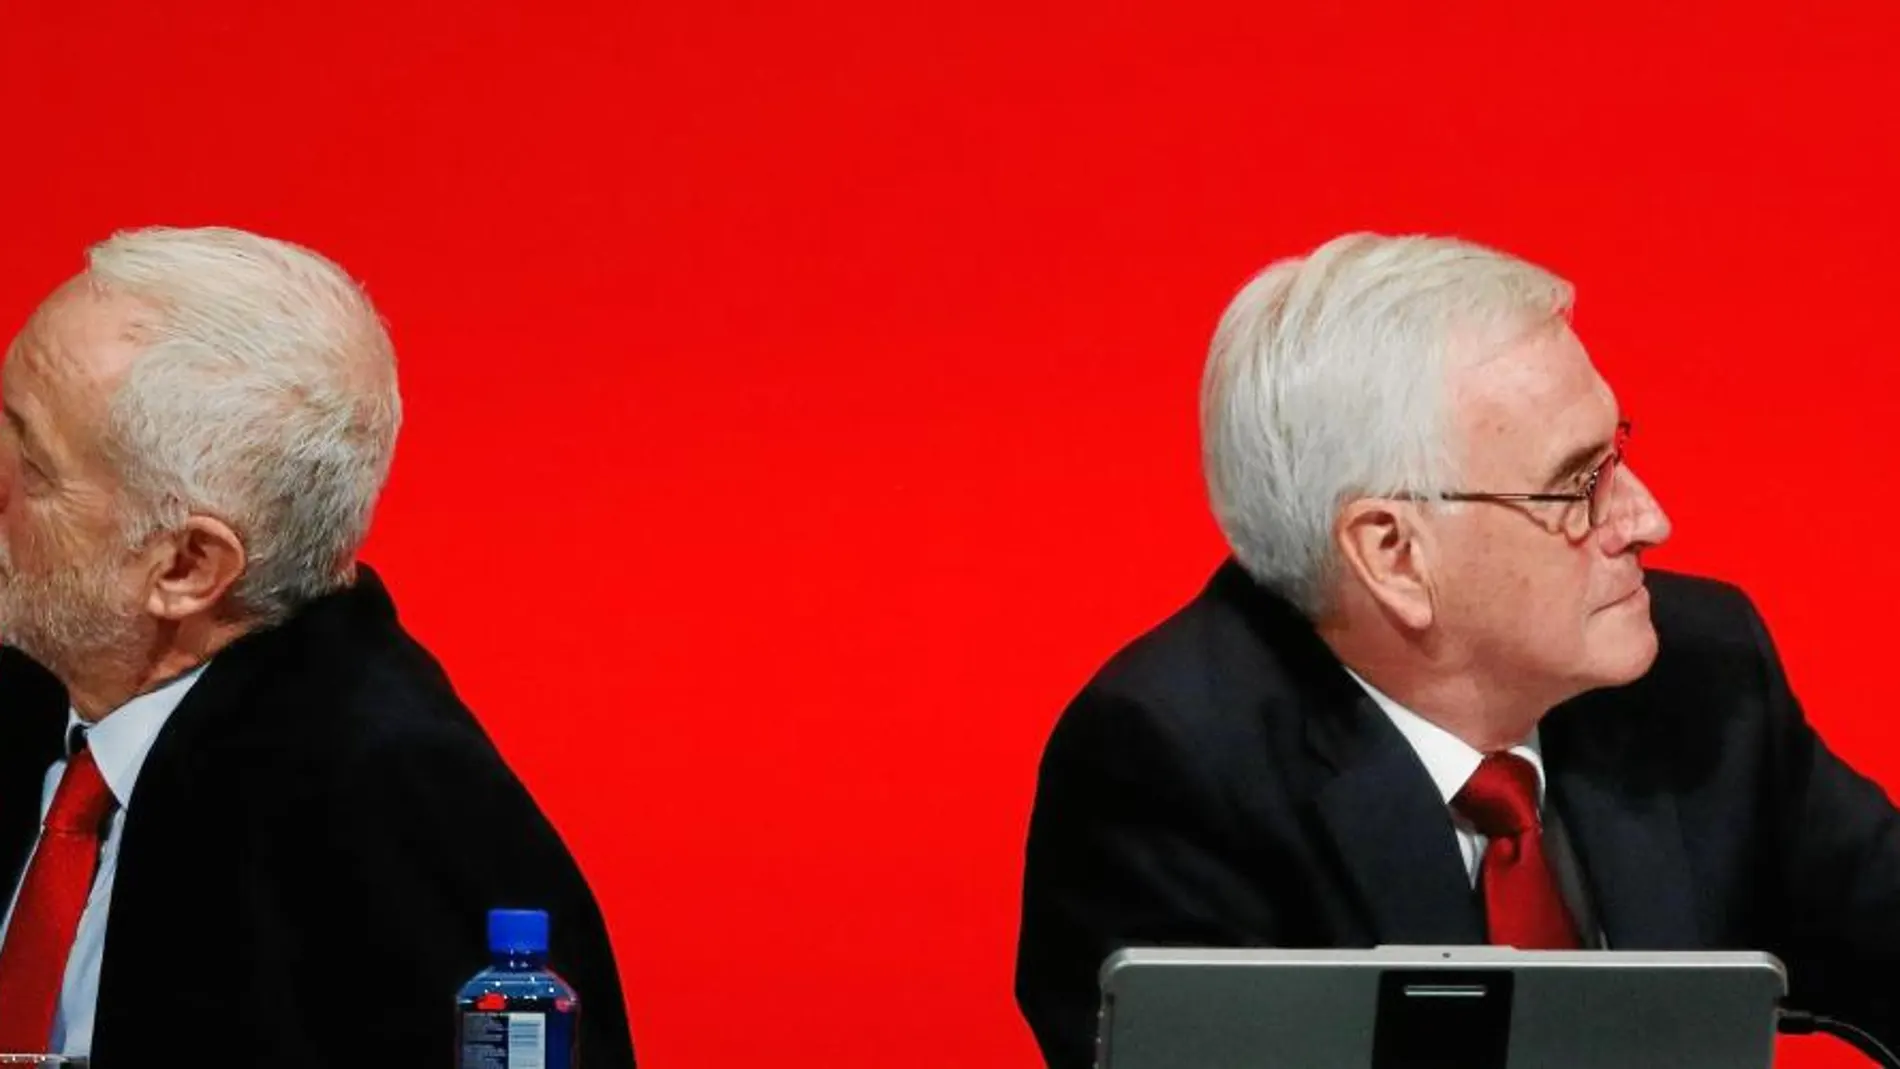 El líder laborista, Jeremy Corbyn, y el canciller en la sombra (ministro de Economía) laborista, John McDonnell, durante un acto de su partido ayer en Liverpool